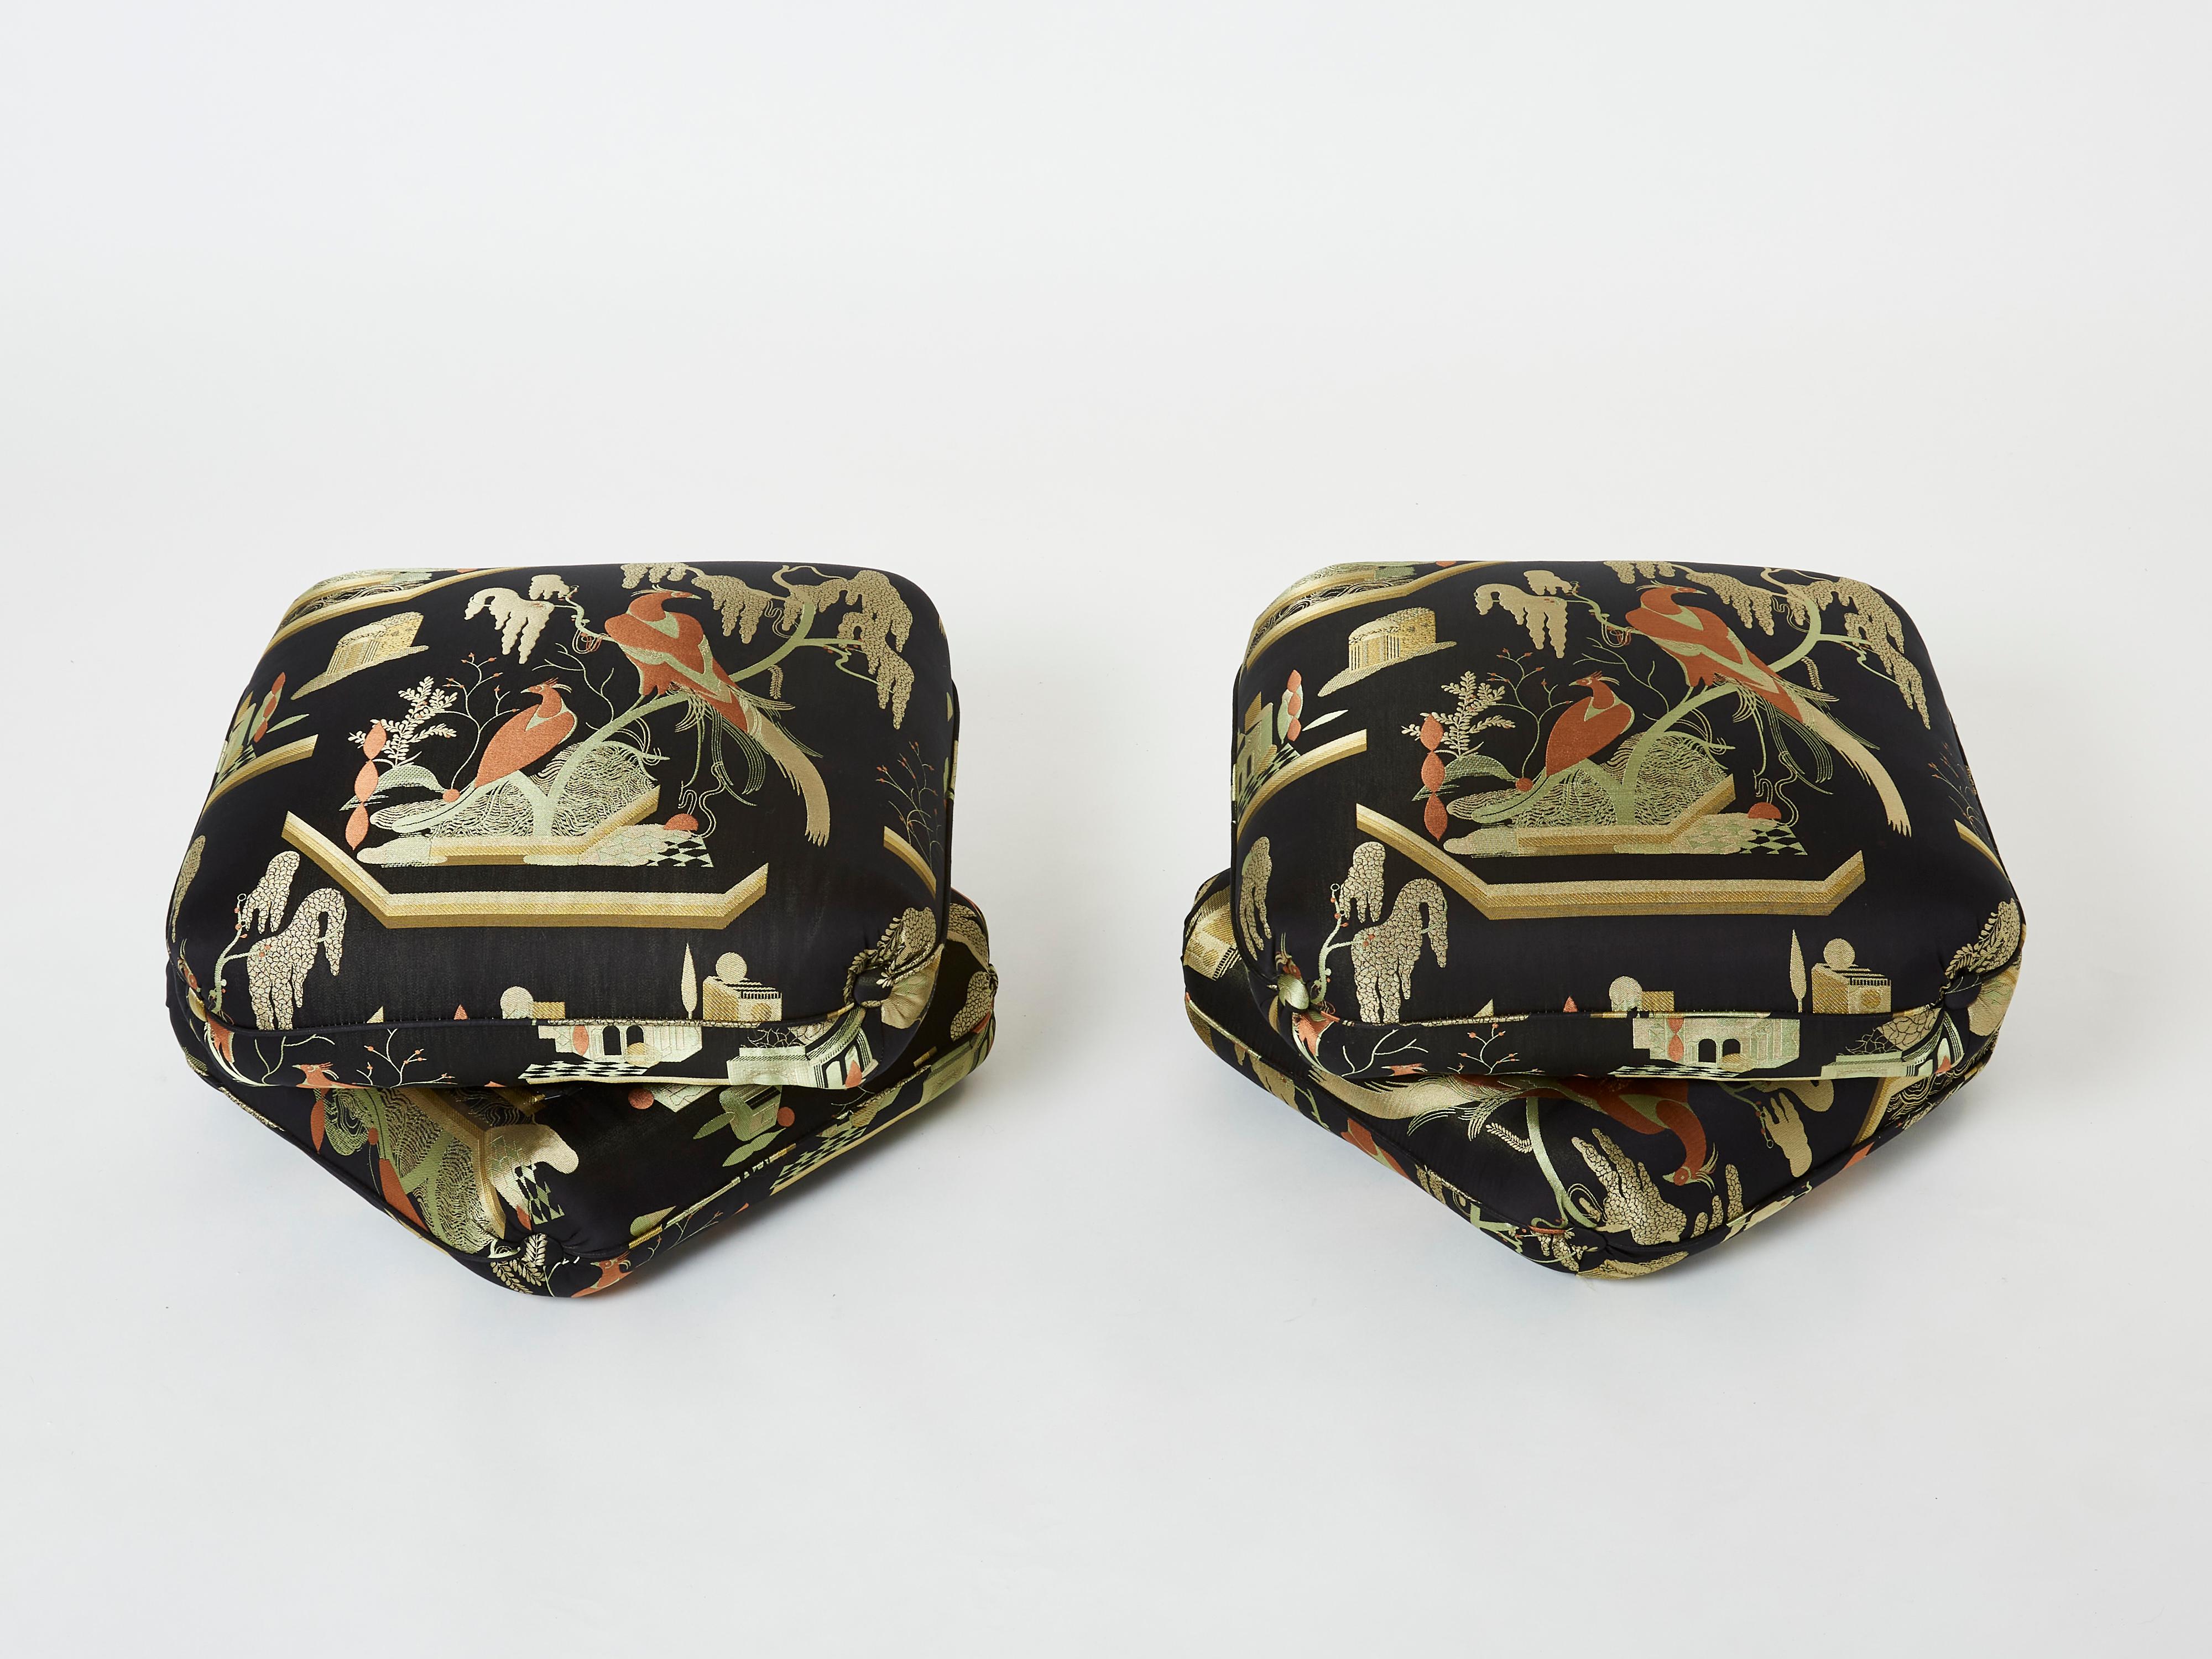 Schönes Paar Hocker des französischen Designers Jacques Charpentier für Maison Jansen, entworfen in den 1970er Jahren. Die Hocker sind aus zwei großen, miteinander verbundenen Polsterelementen gefertigt. Sie wurden neu mit einem seidigen Jacquard